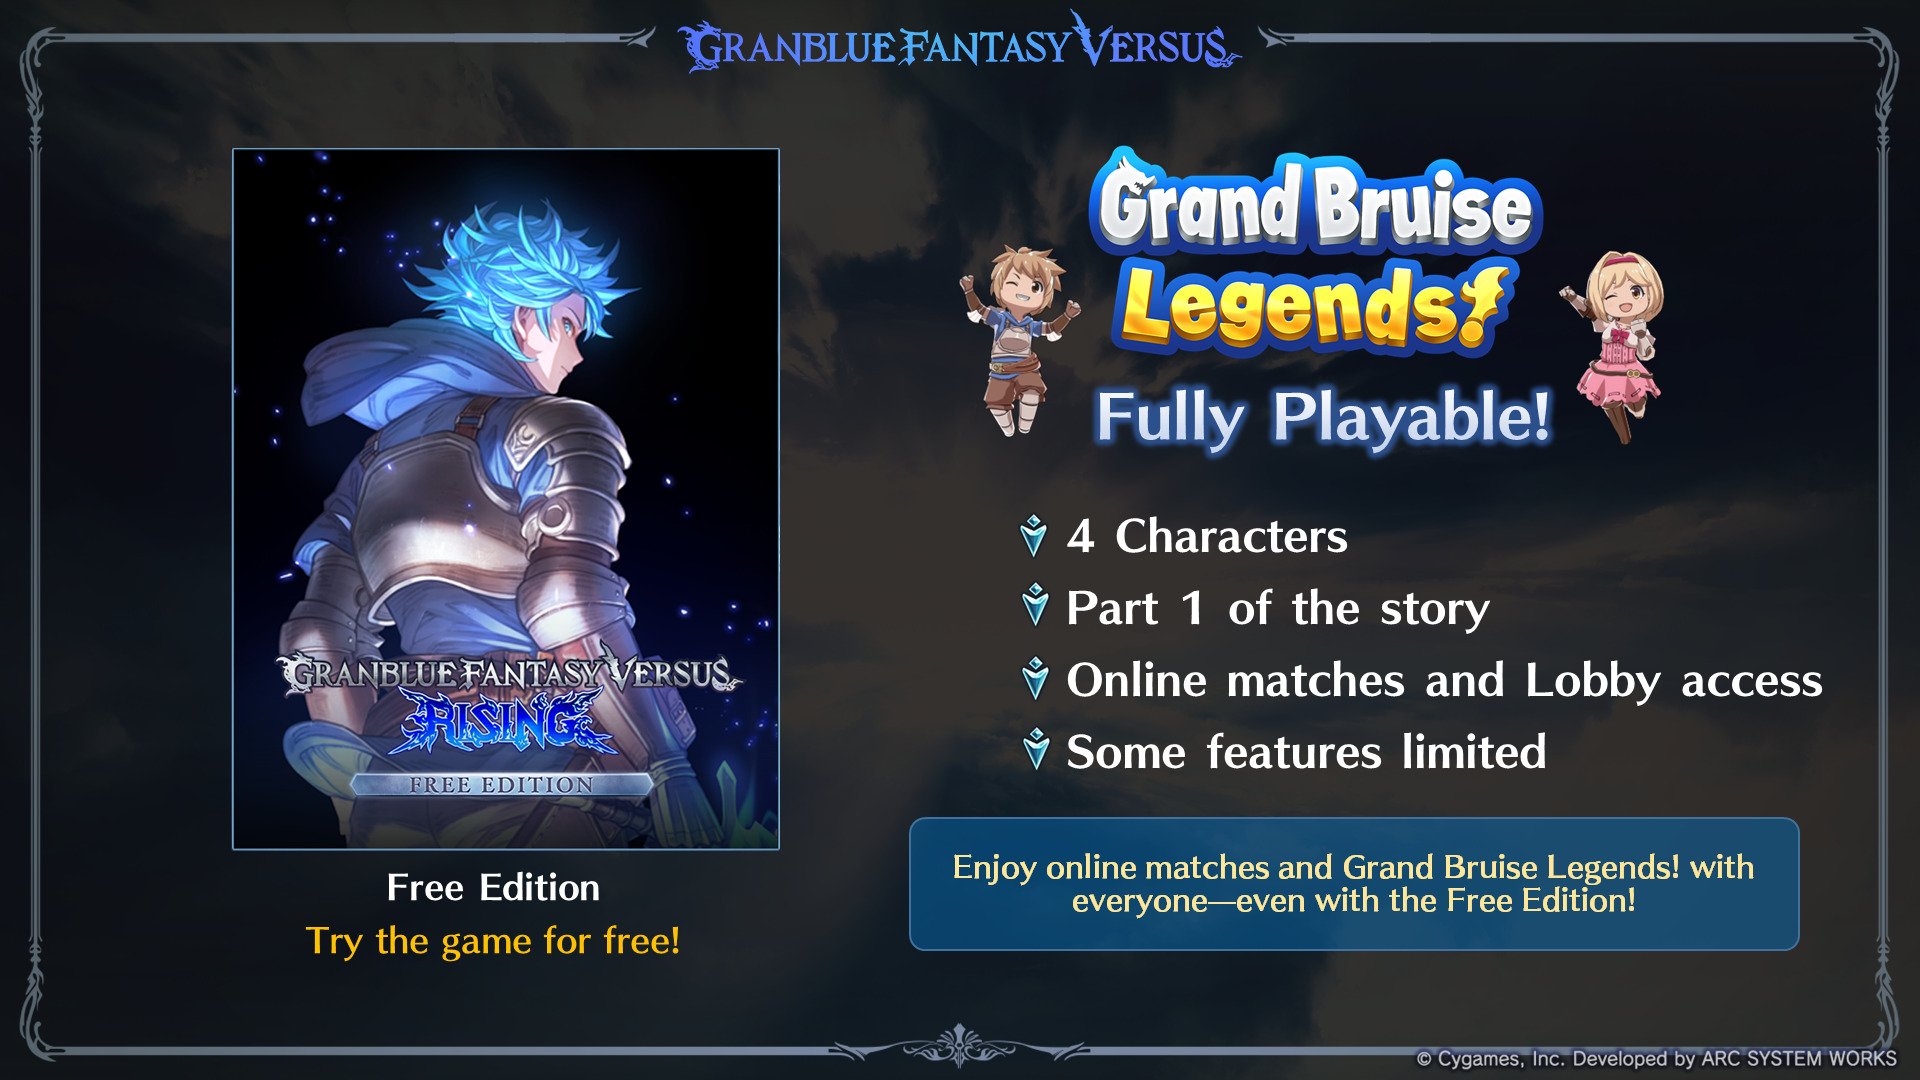  Granblue Fantasy: Versus - Premium Edition